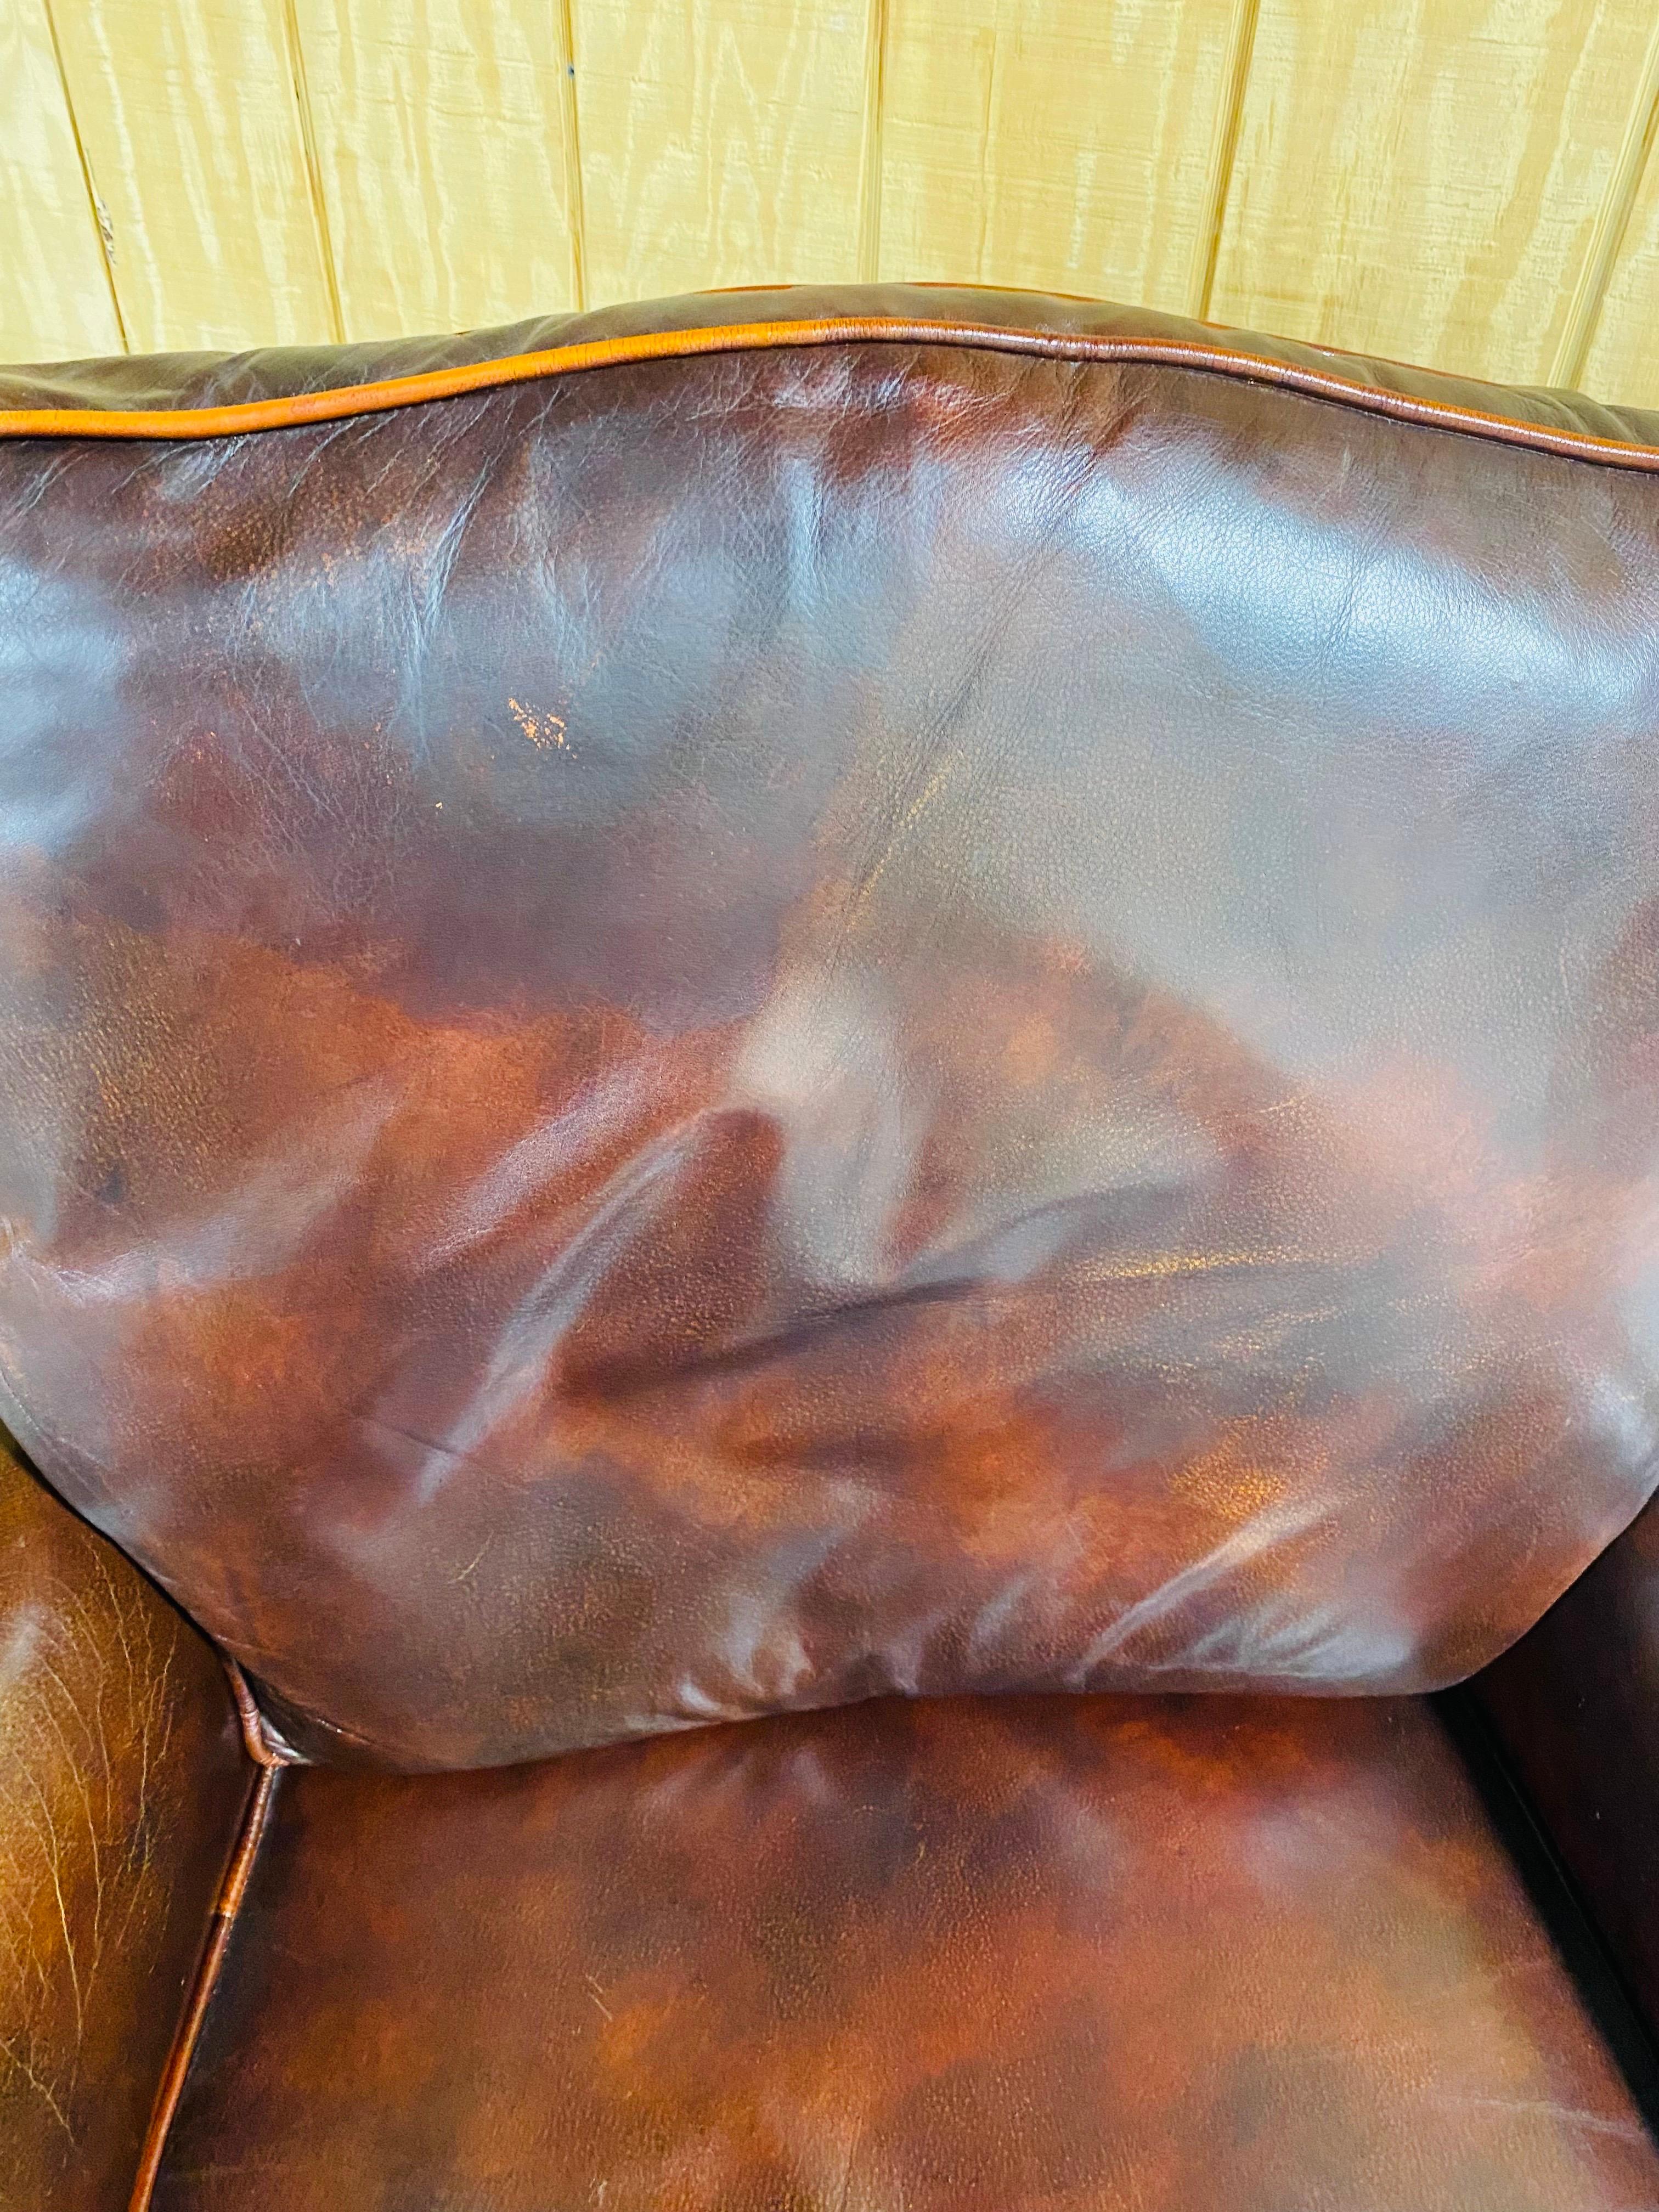 Il s'agit d'un fauteuil club vintage en cuir marron foncé de style classique. Cette chaise repose sur un cadre de style Chippendale en noyer et est recouverte d'un cuir confortable brun foncé altéré par les intempéries. La chaise présente des clous